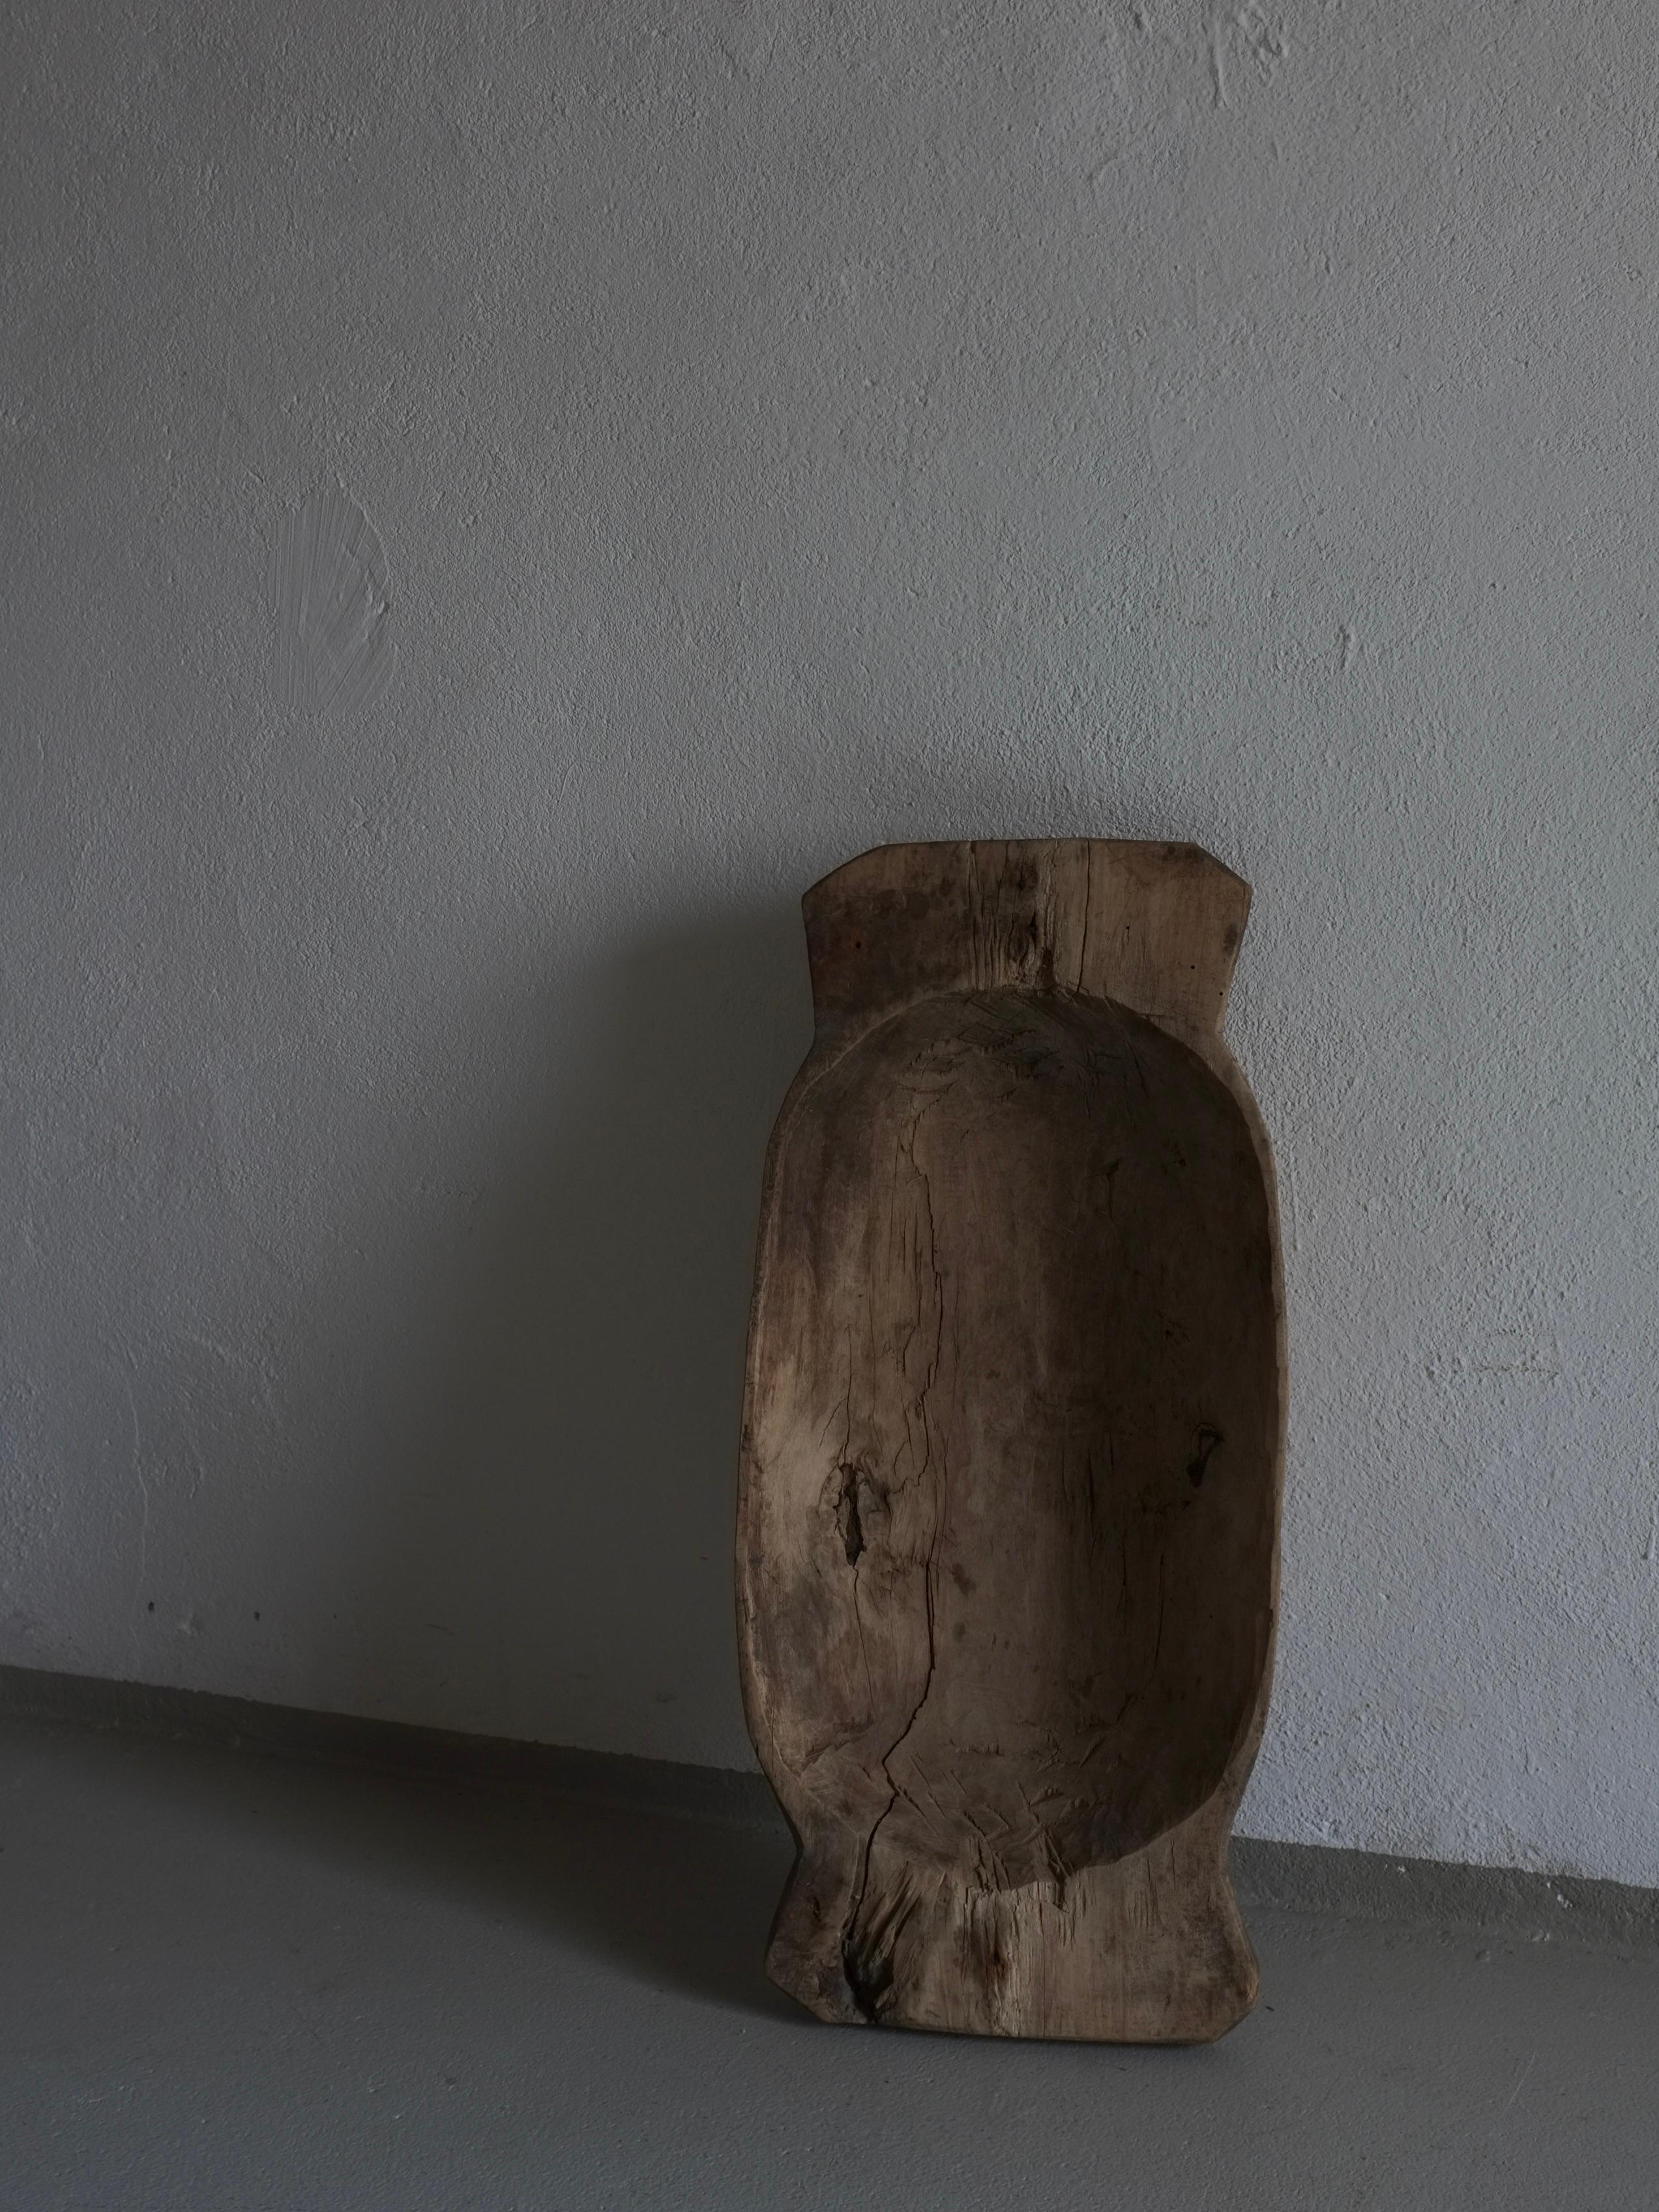 Ancien bol primitif en bois sculpté (#2) avec une belle patine.

Informations complémentaires :
Origine : Lettonie
Dimensions : L 60 cm x P 28 cm x H 9,5 cm